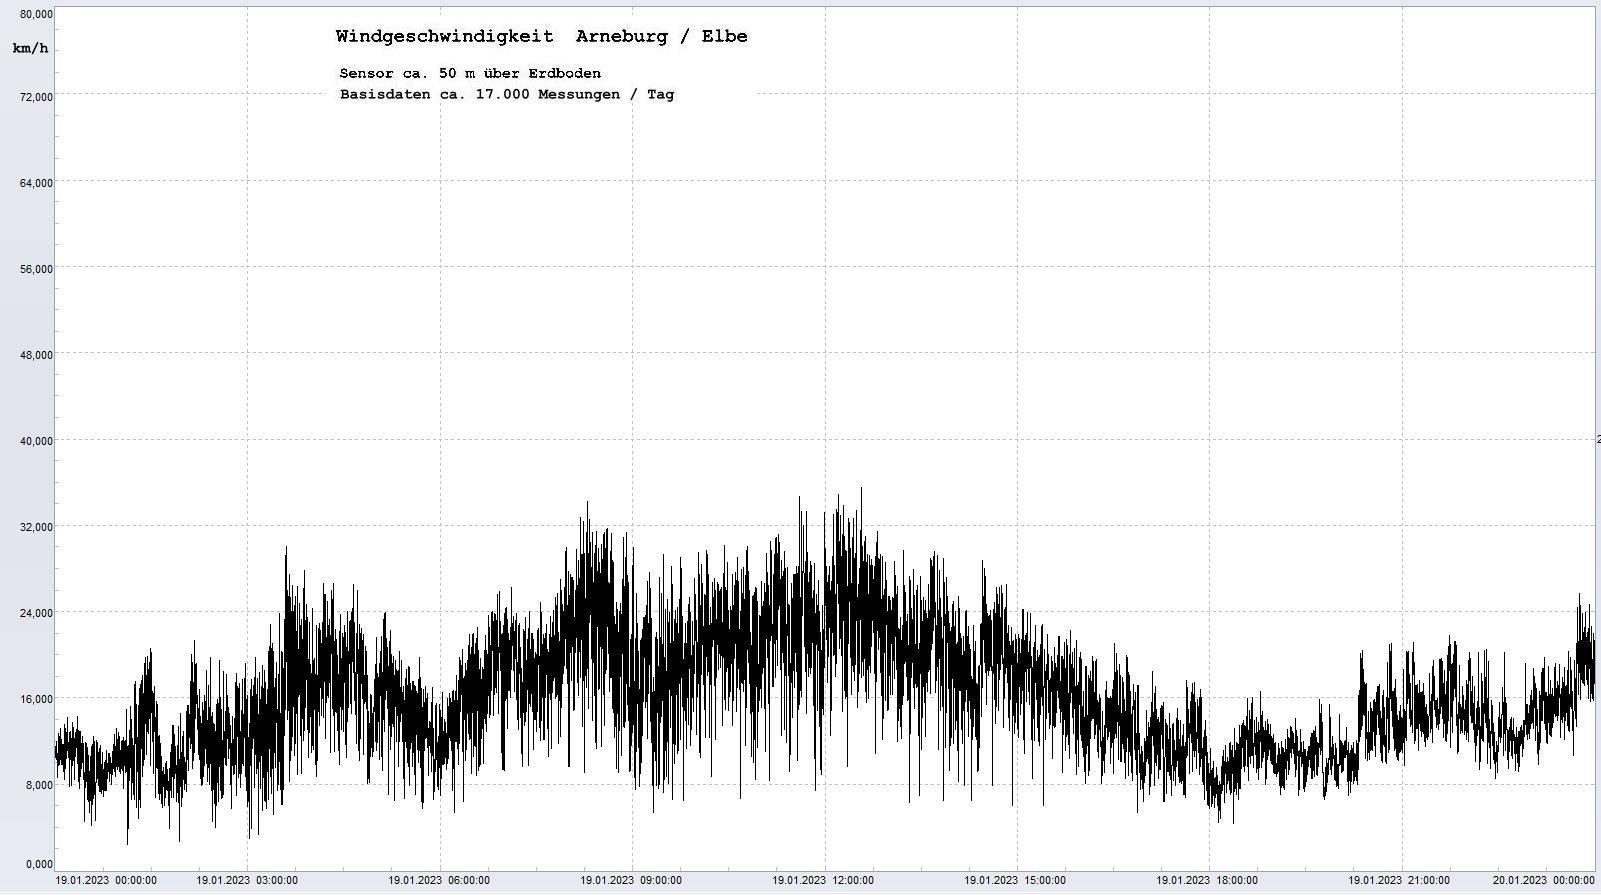 Arneburg Tages-Diagramm Winddaten, 19.01.2023
  Diagramm, Sensor auf Gebäude, ca. 50 m über Erdboden, Basis: 5s-Aufzeichnung